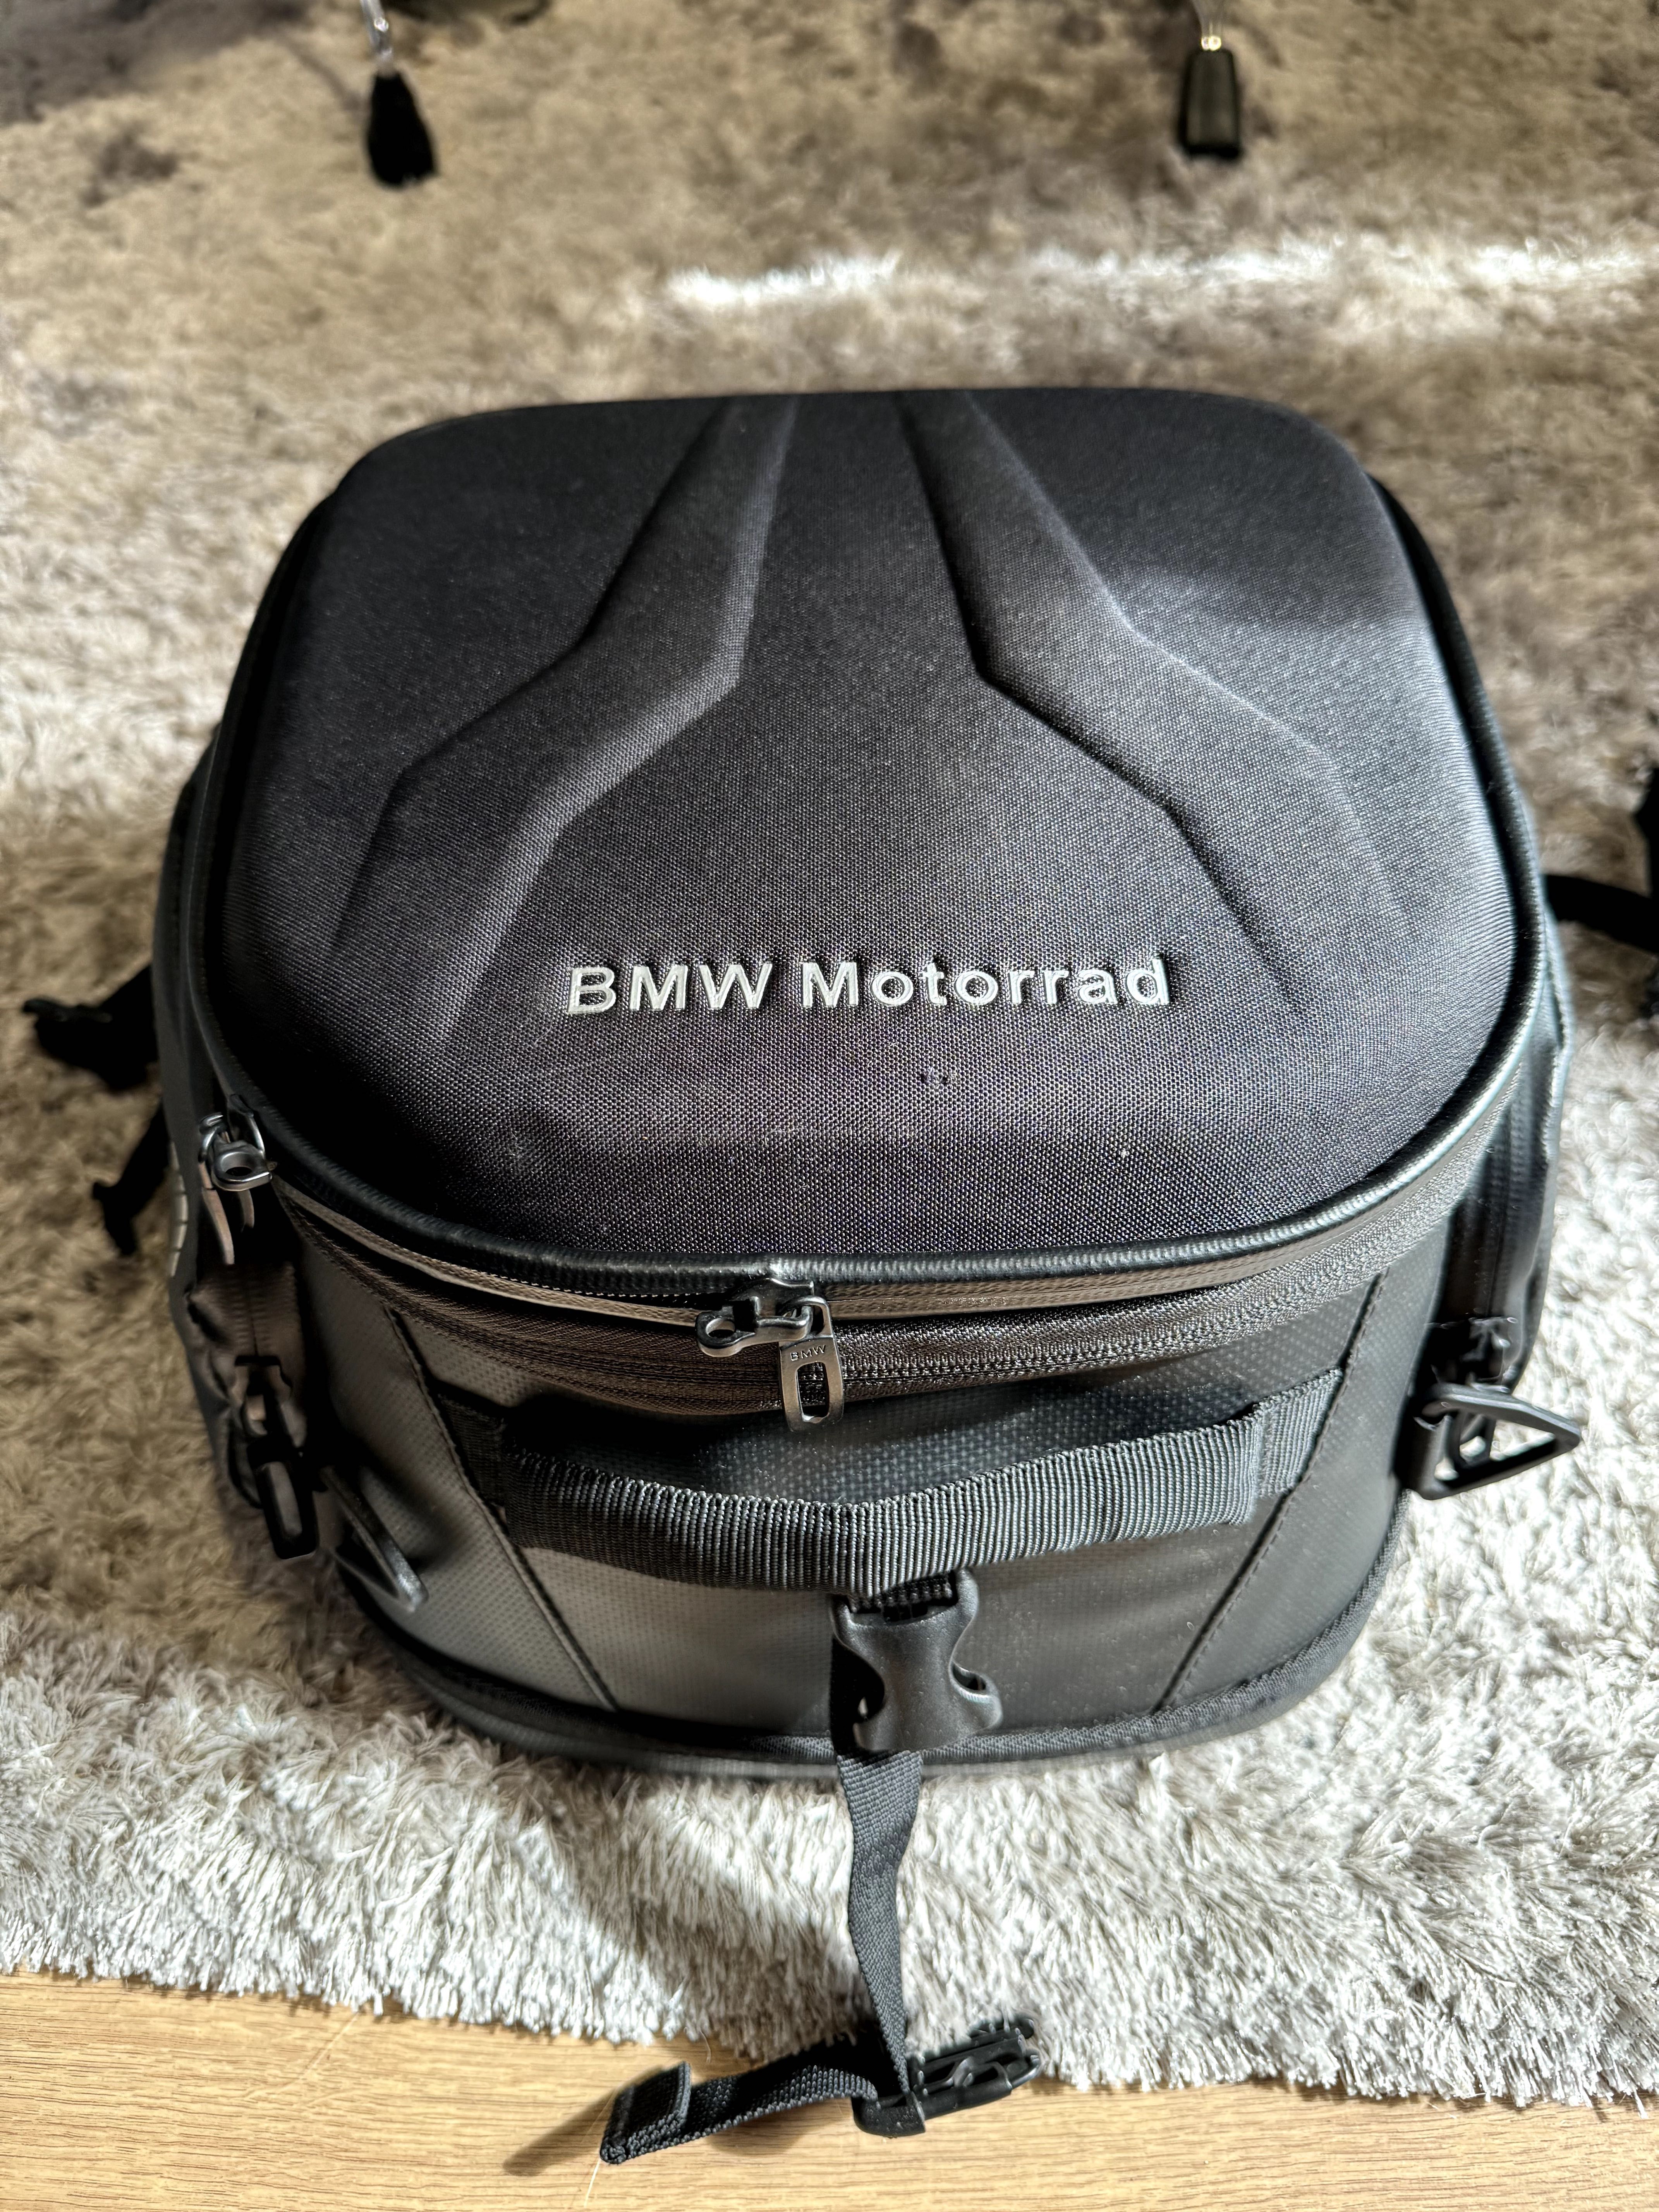 Acessórios BMW 1250GS, capacete BMW sys7 e equipamento